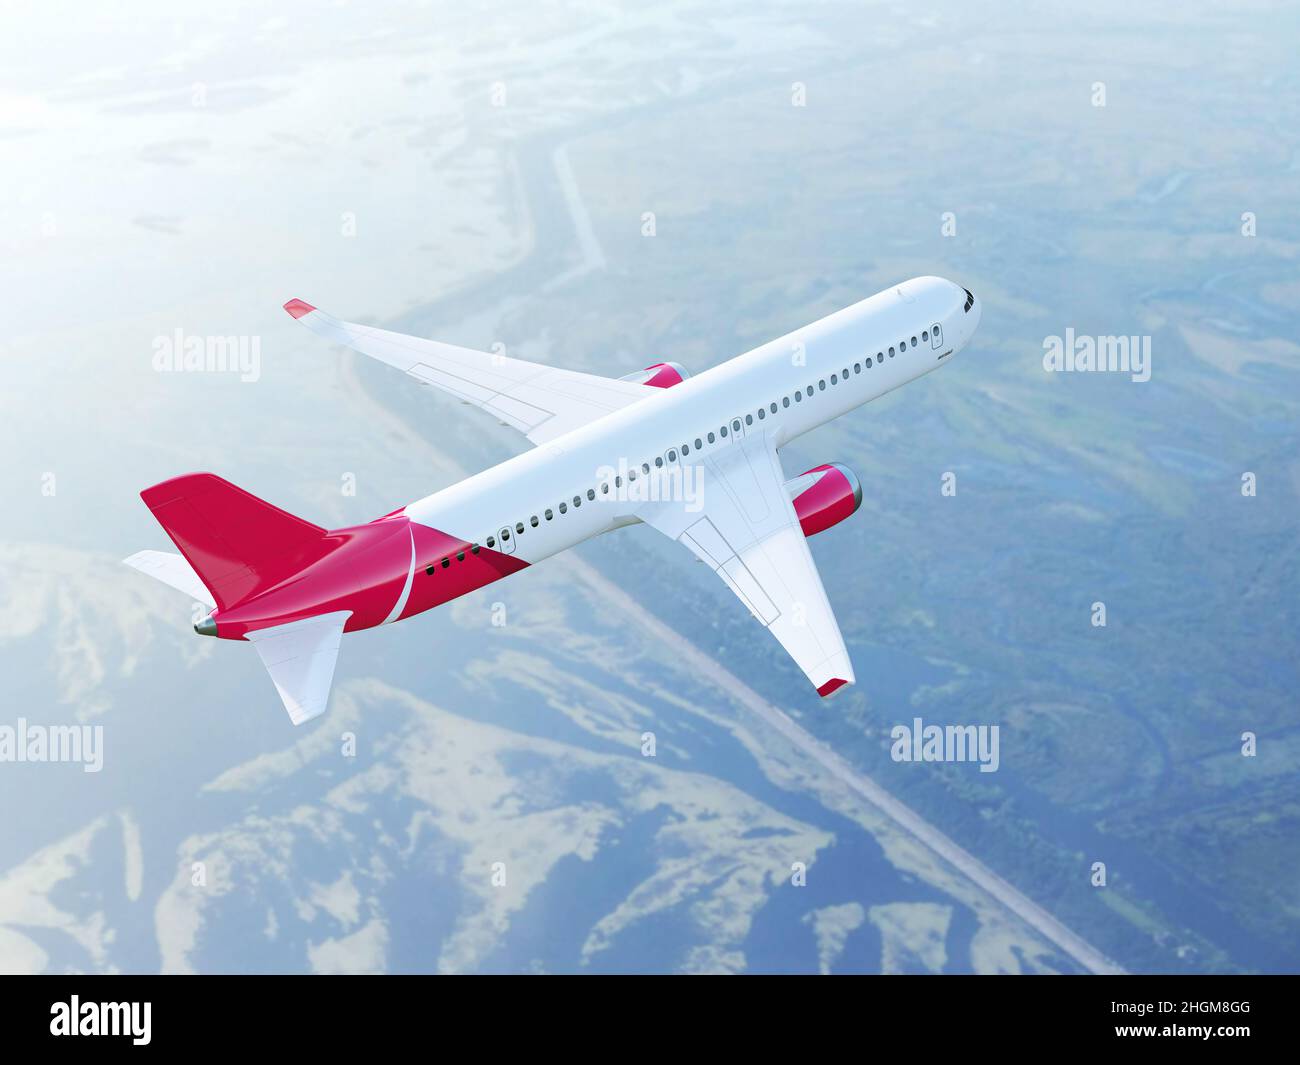 Passenger aeroplane flying, illustration Stock Photo